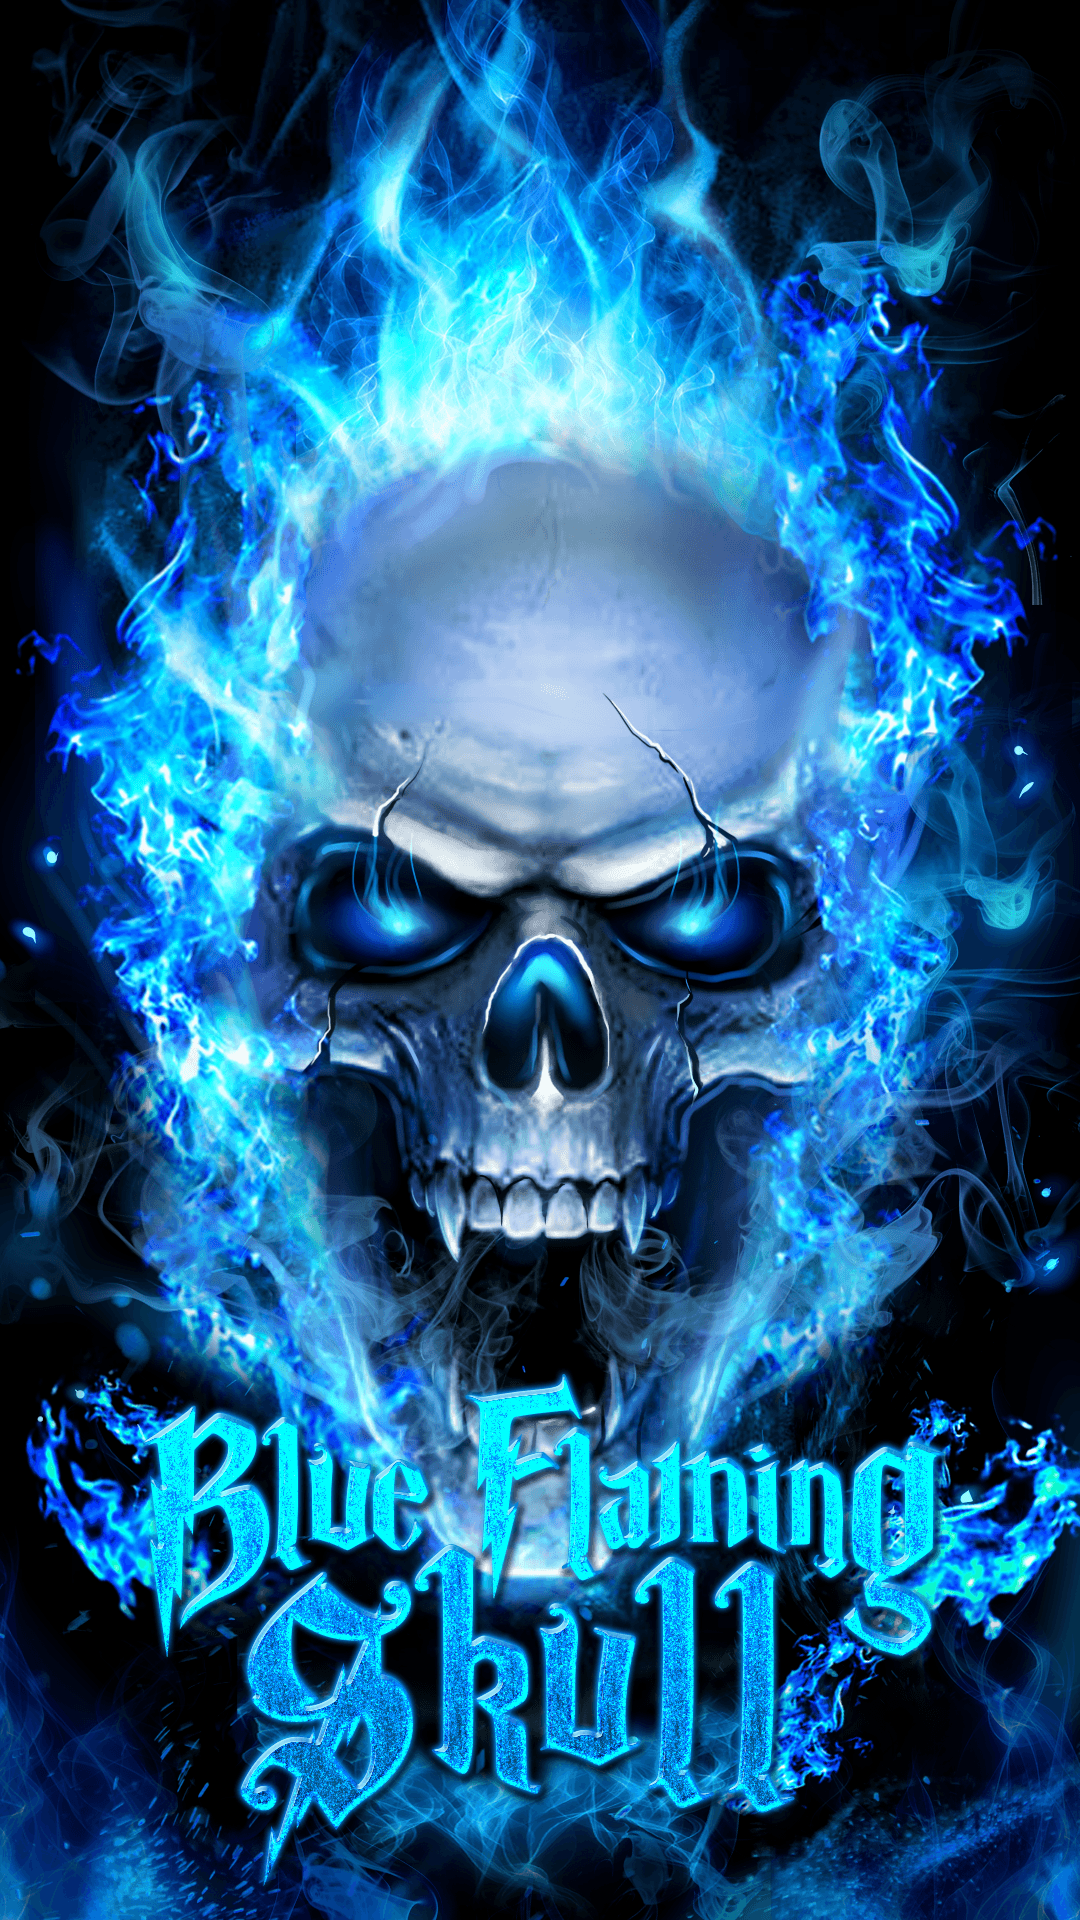 Blue flaming skull live wallpaper!. Skull wallpaper, Skull artwork, Skull